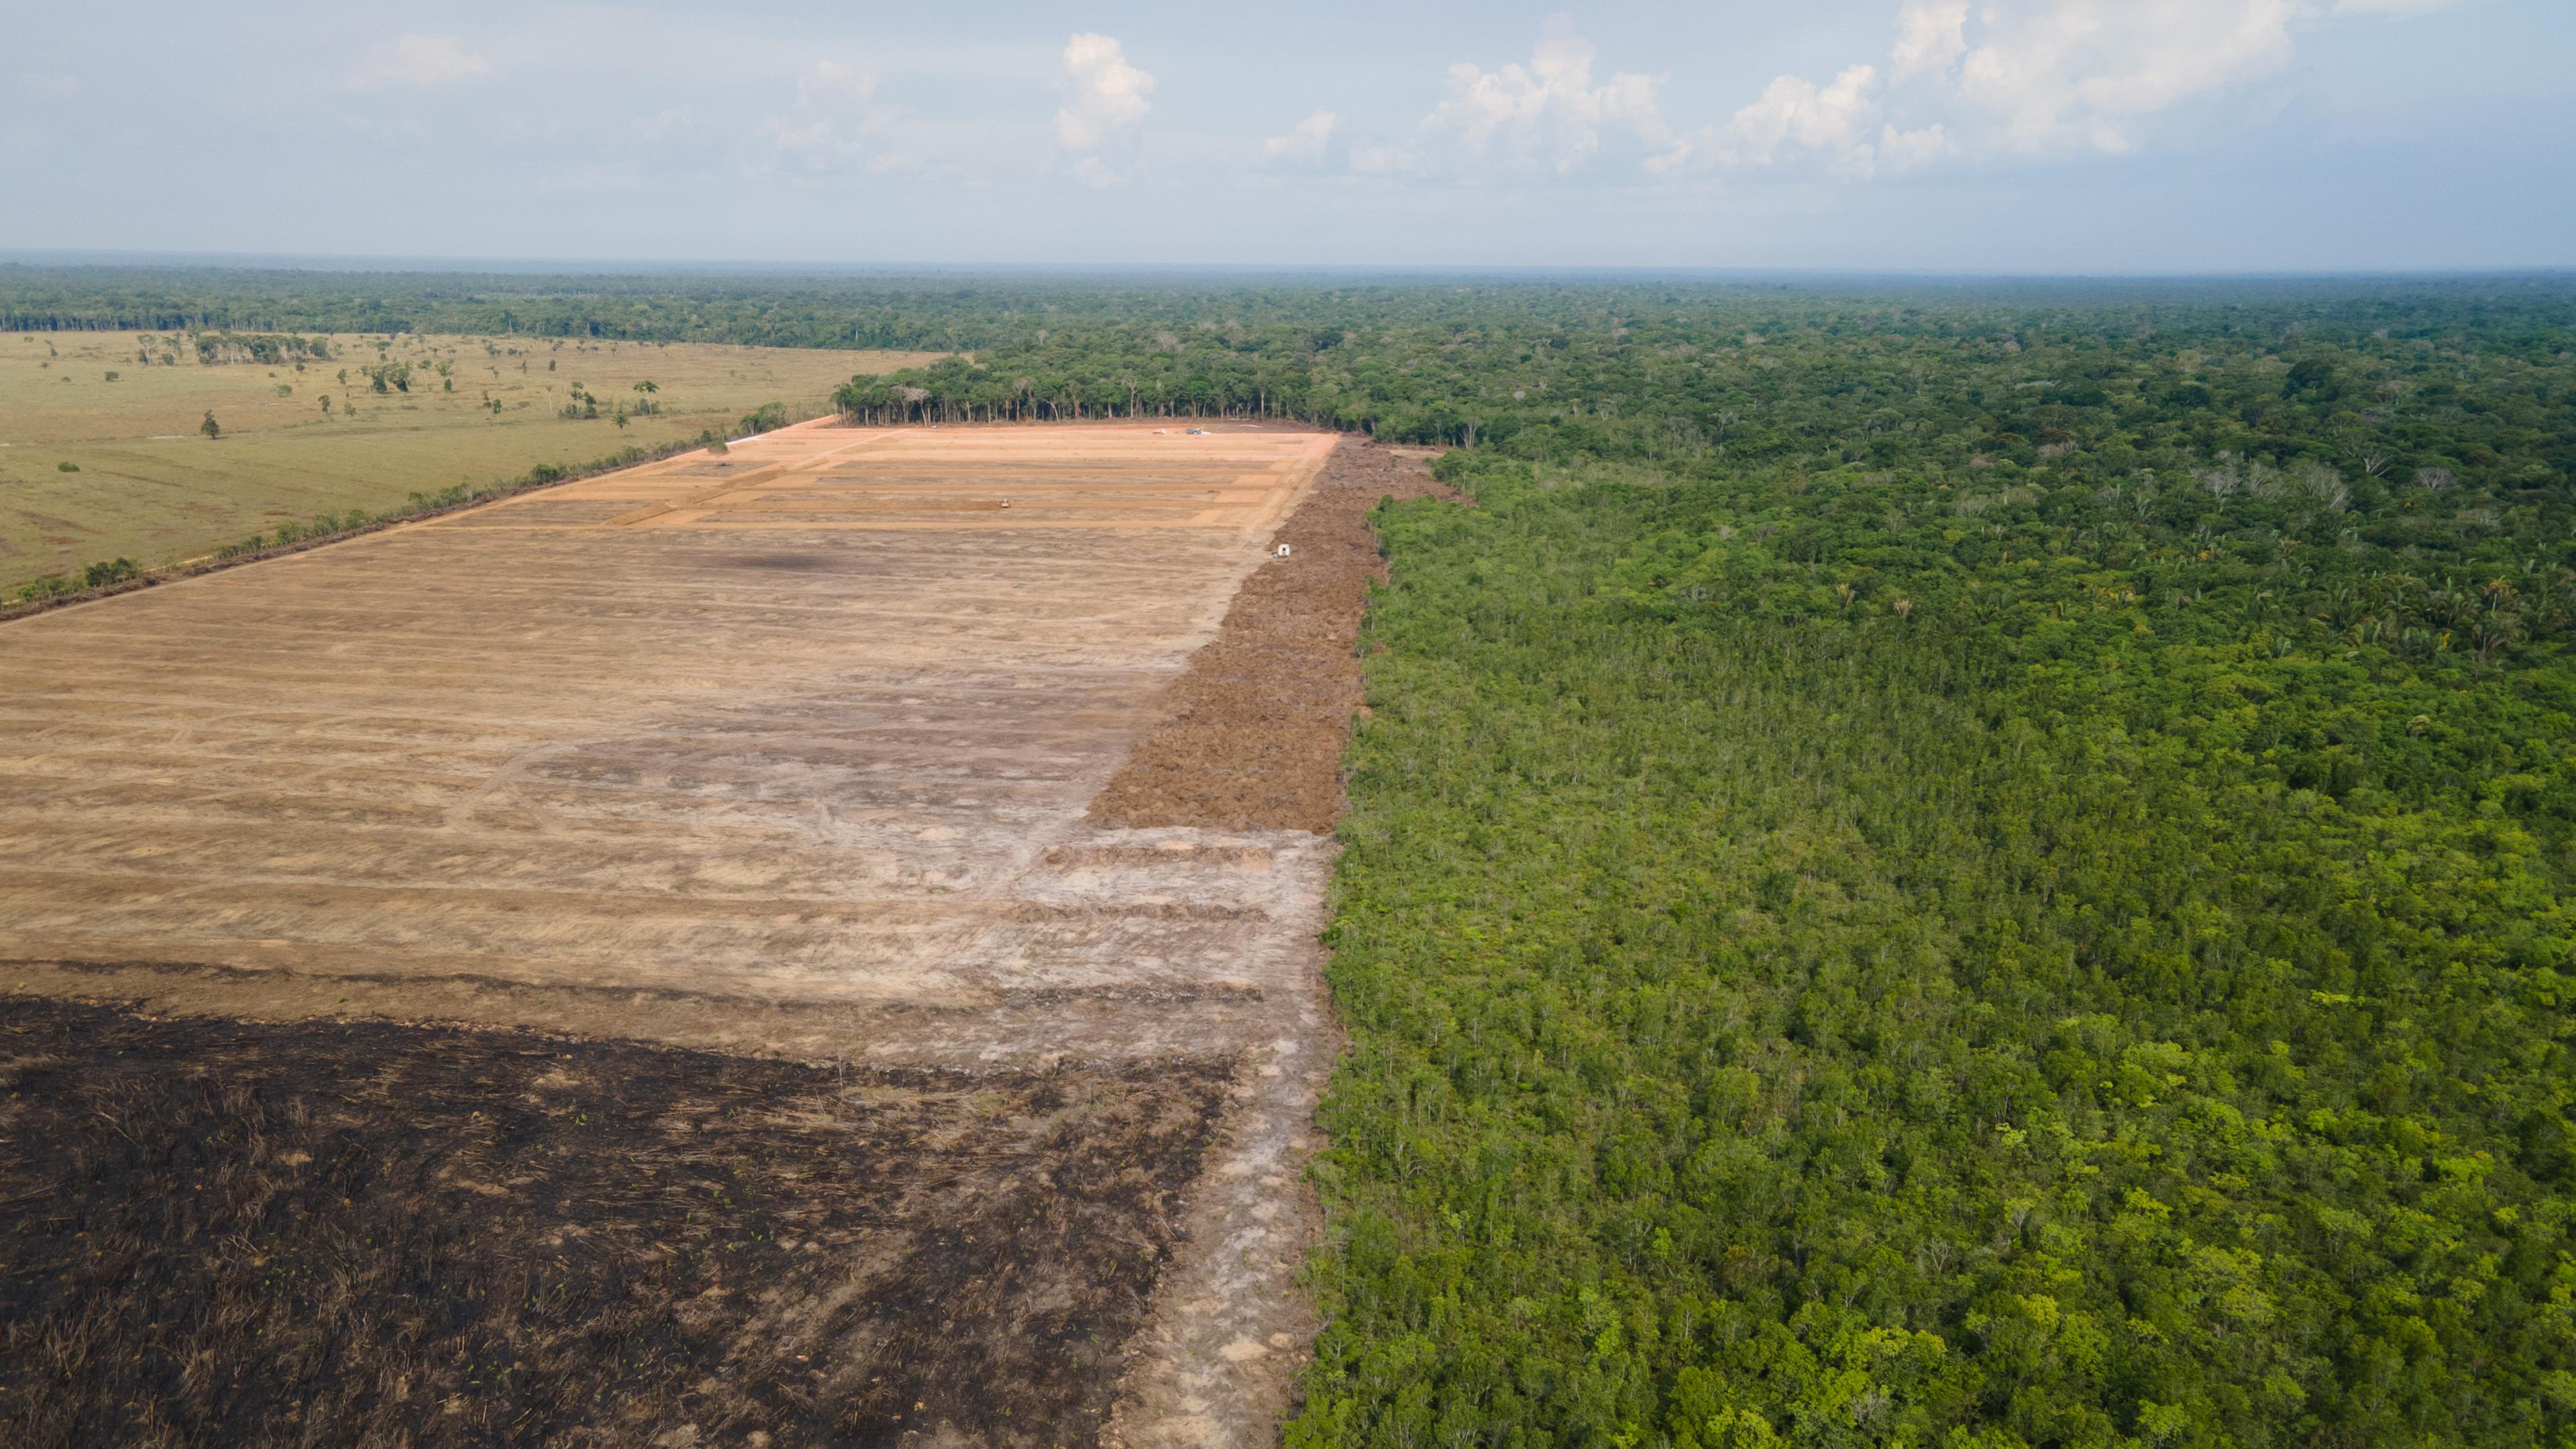 Ein Luftbild zeigt eine verbrannte und abgeholzte Fläche in einem Amazonas-Gebiet in Brasilien am 07.09.2021